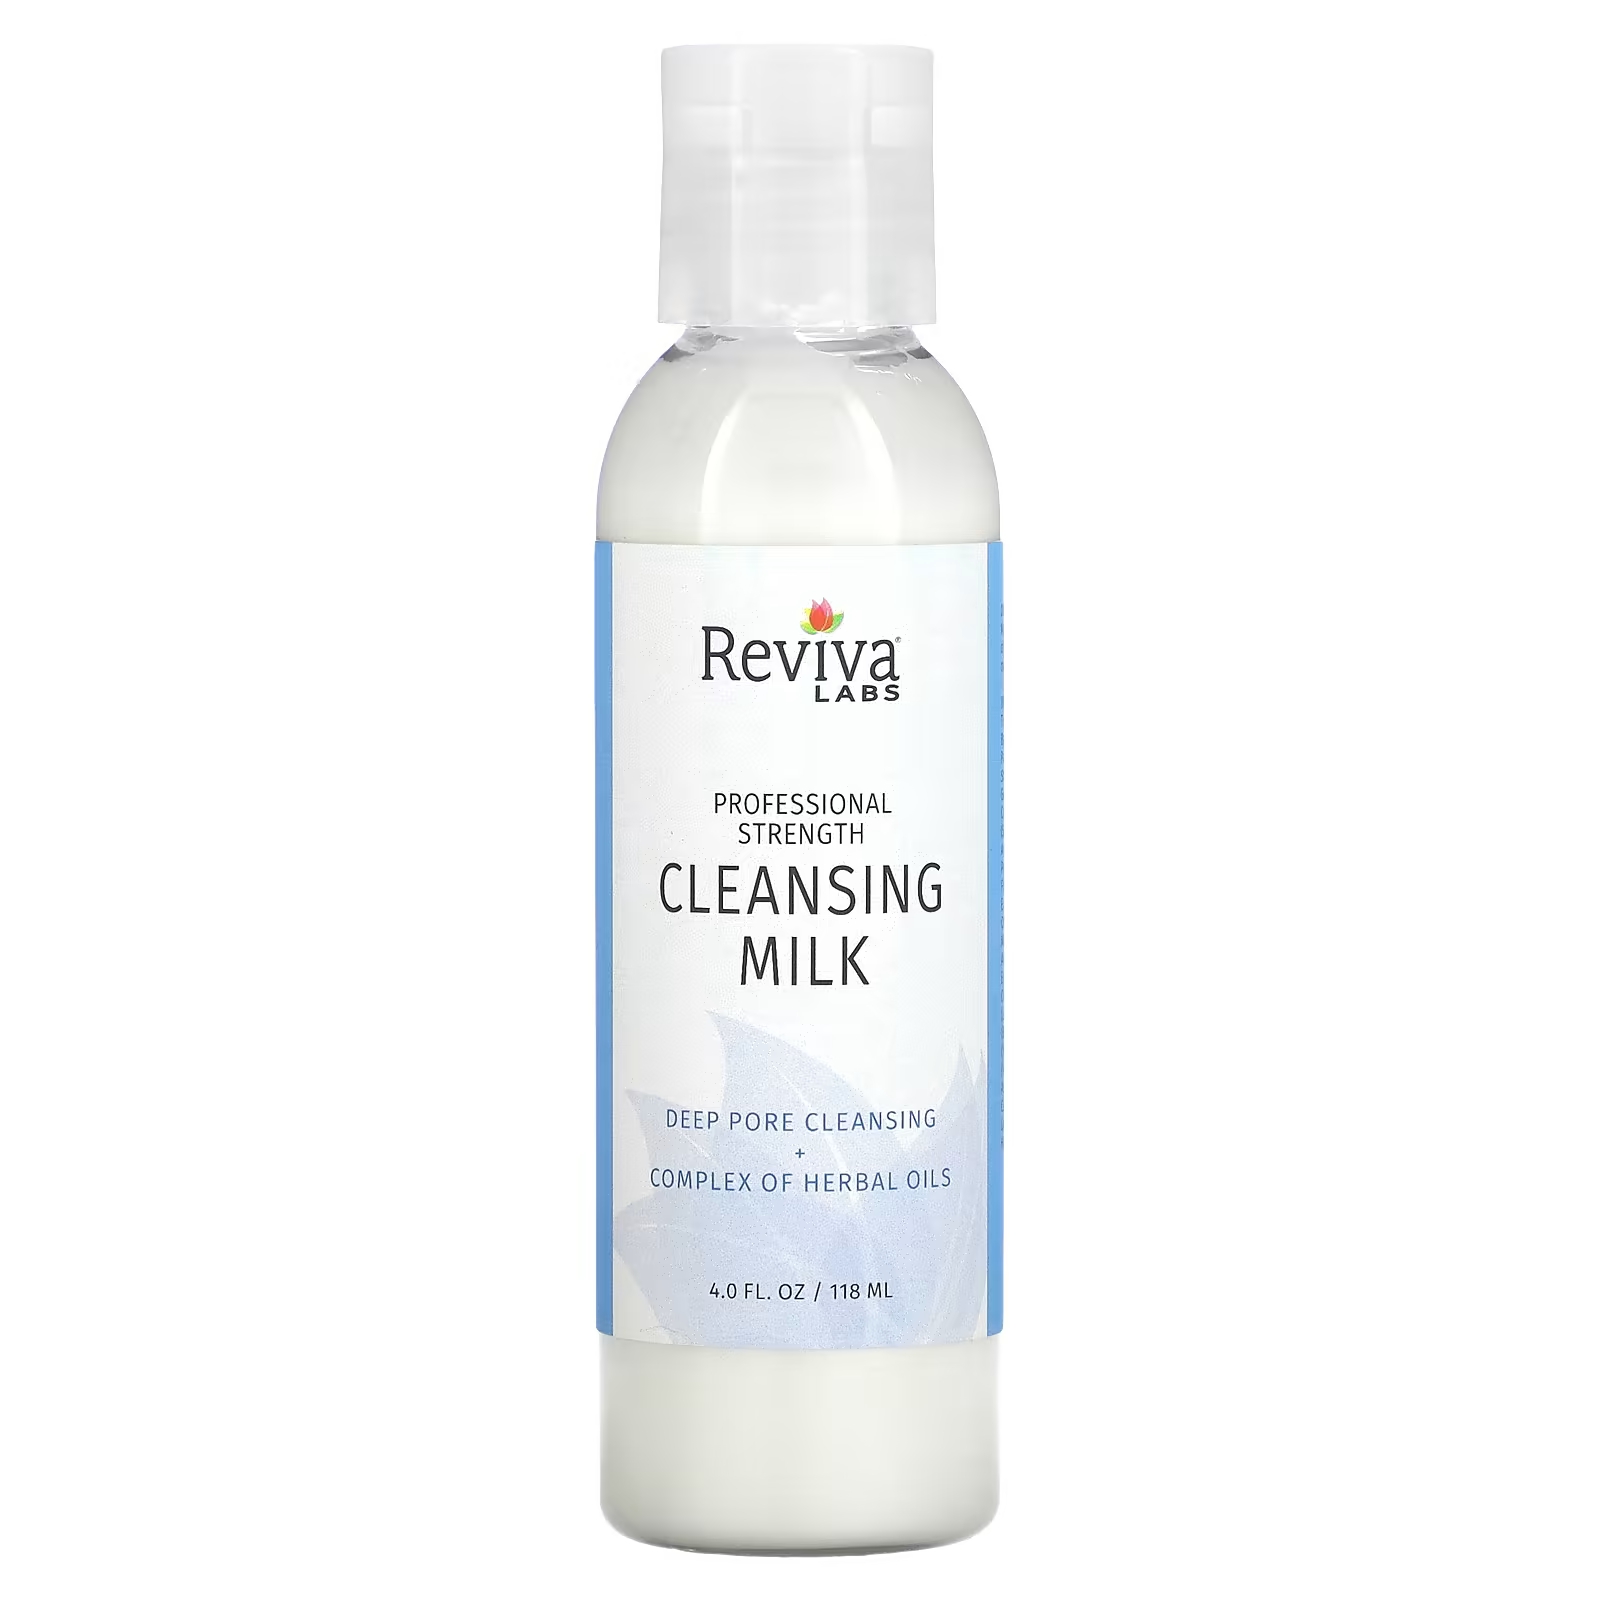 Молочко Reviva Labs очищающее, 118 мл мыло для рук madre labs тройной концентрации 118 мл